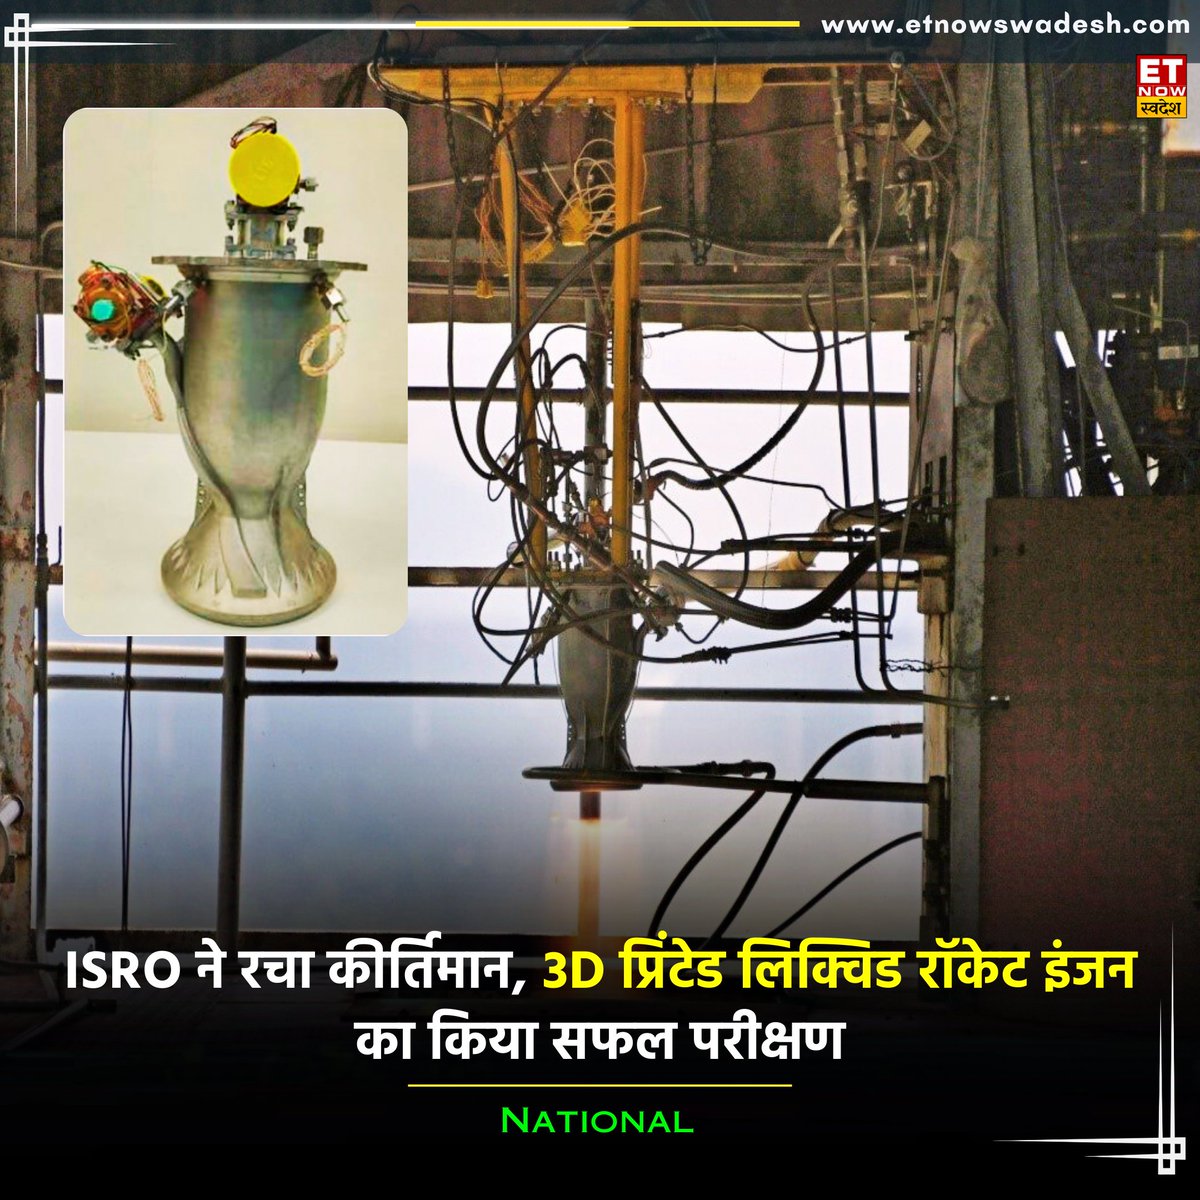 #ISRO ने लिक्विड रॉकेट इंजन का सफल परीक्षण कर बड़ी कामयाबी हासिल की, इस इंजन को 3D प्रिंटेड तकनीक का उपयोग करके बनाया गया है 

@isro के अनुसार यह नया इंजन 97% कच्चे माल की बचत करता है और प्रोडक्शन टाइम को 60% तक कम कर देता है

#India #SpaceResearch #Rocket #PSLV